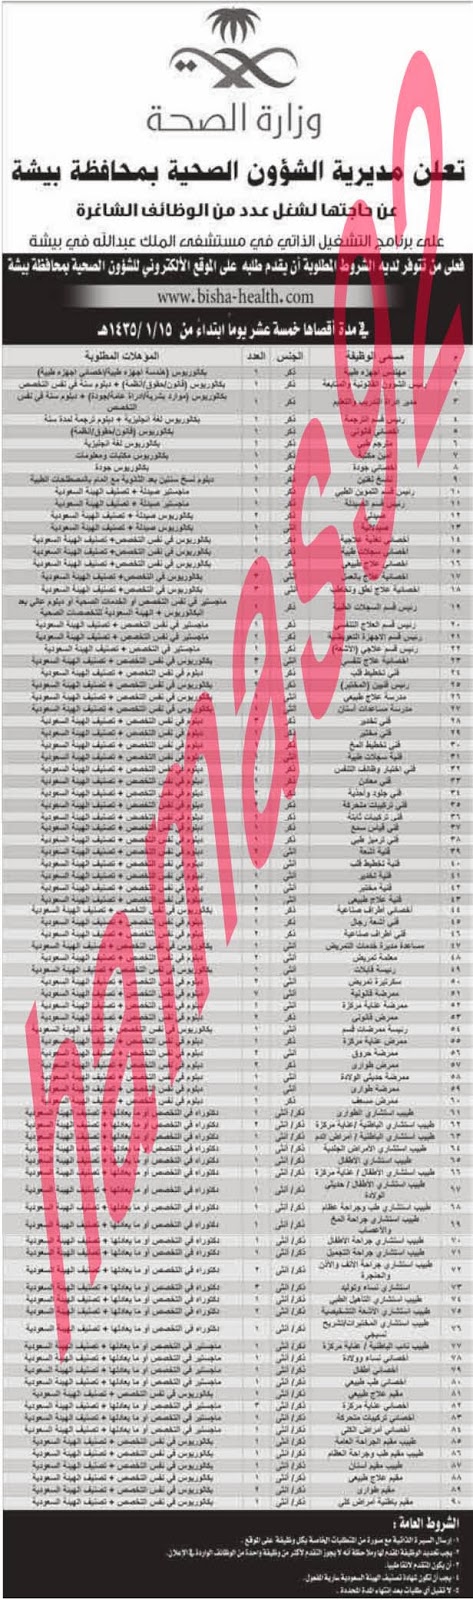 وظائف شاغرة فى جريدة الوطن السعودية الاثنين 18-11-2013 %D8%A7%D9%84%D9%88%D8%B7%D9%86+%D8%B3+1